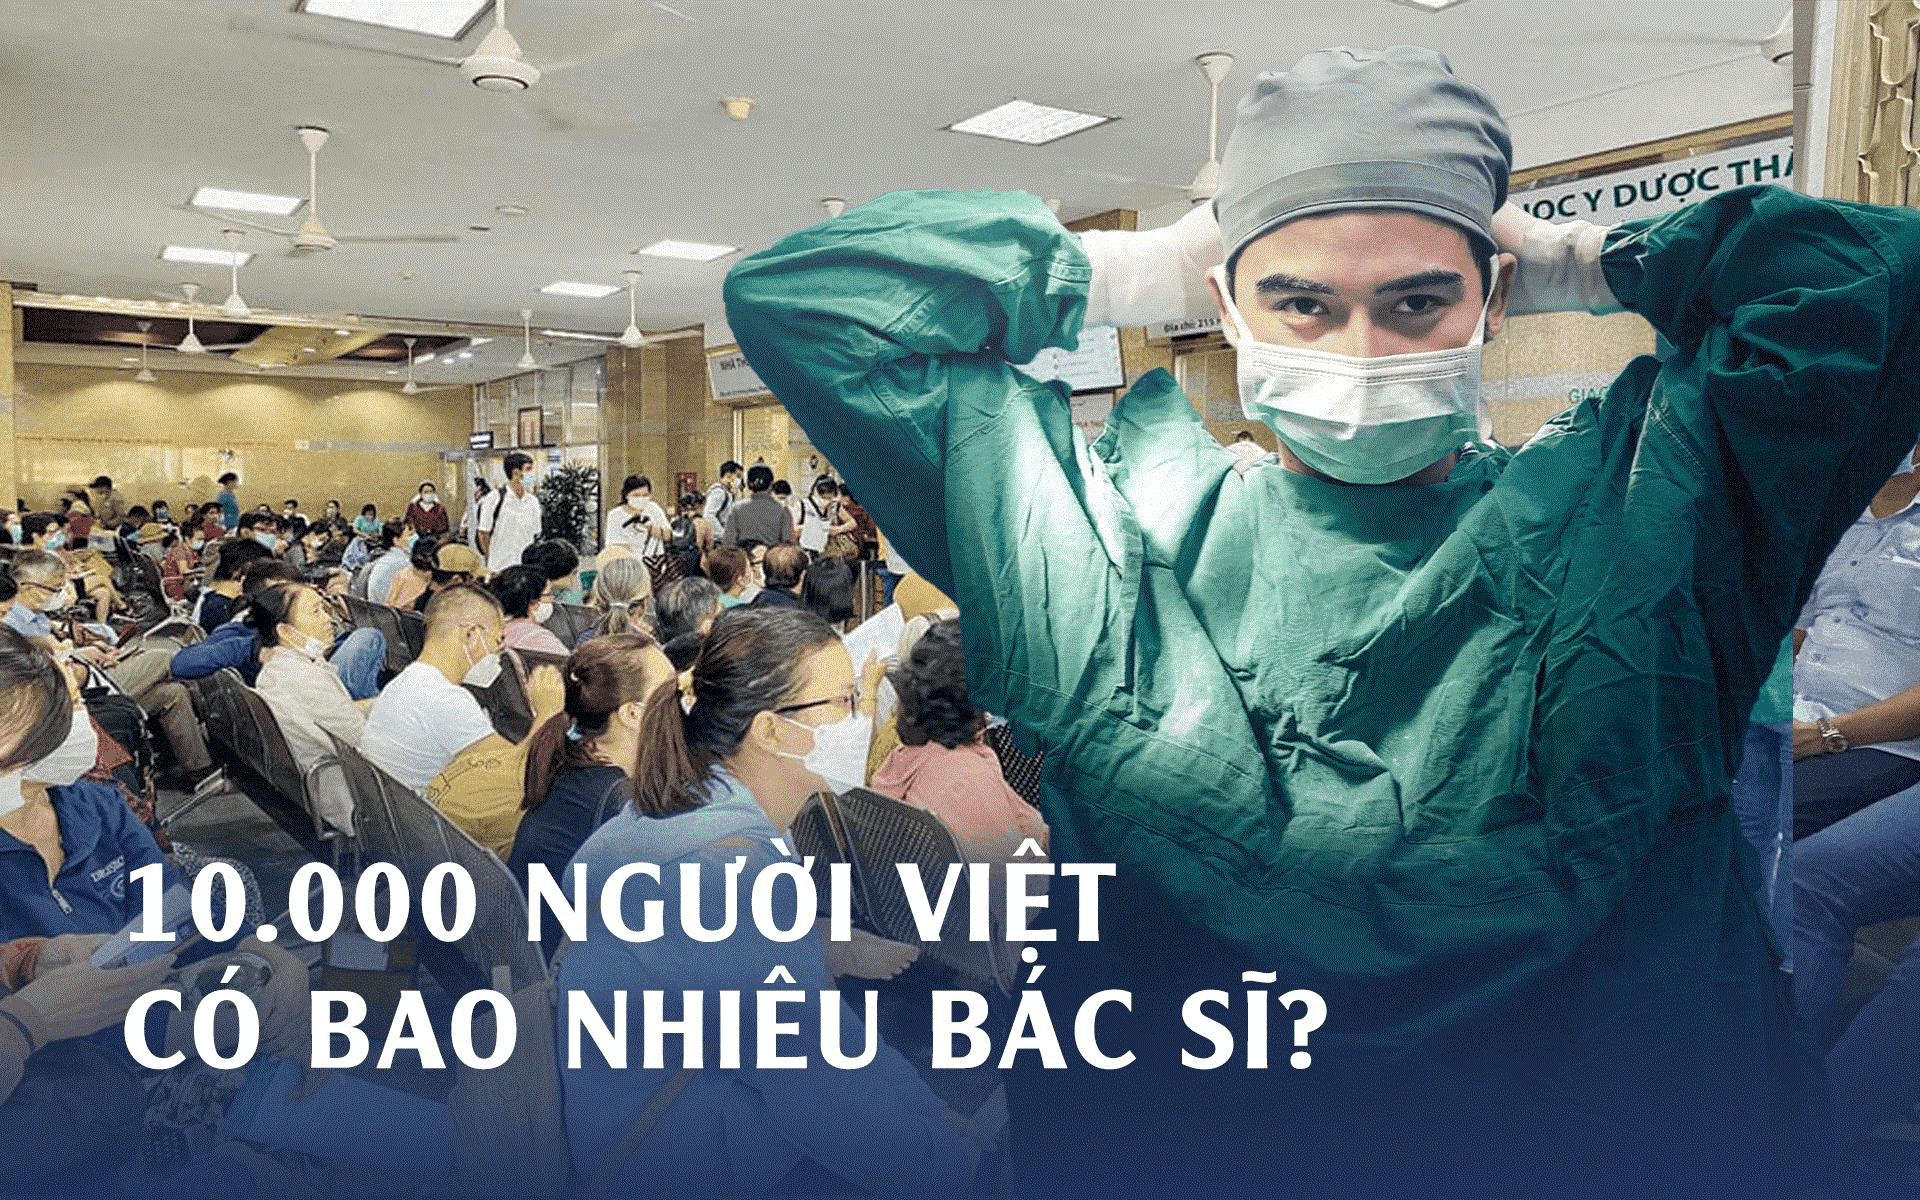 ‏7 năm trước cứ 10.000 người Việt mới có 8,5 bác sĩ, giờ tăng/giảm ra sao? So với Singapore, Thái Lan càng bất ngờ ‏ - Ảnh 1.